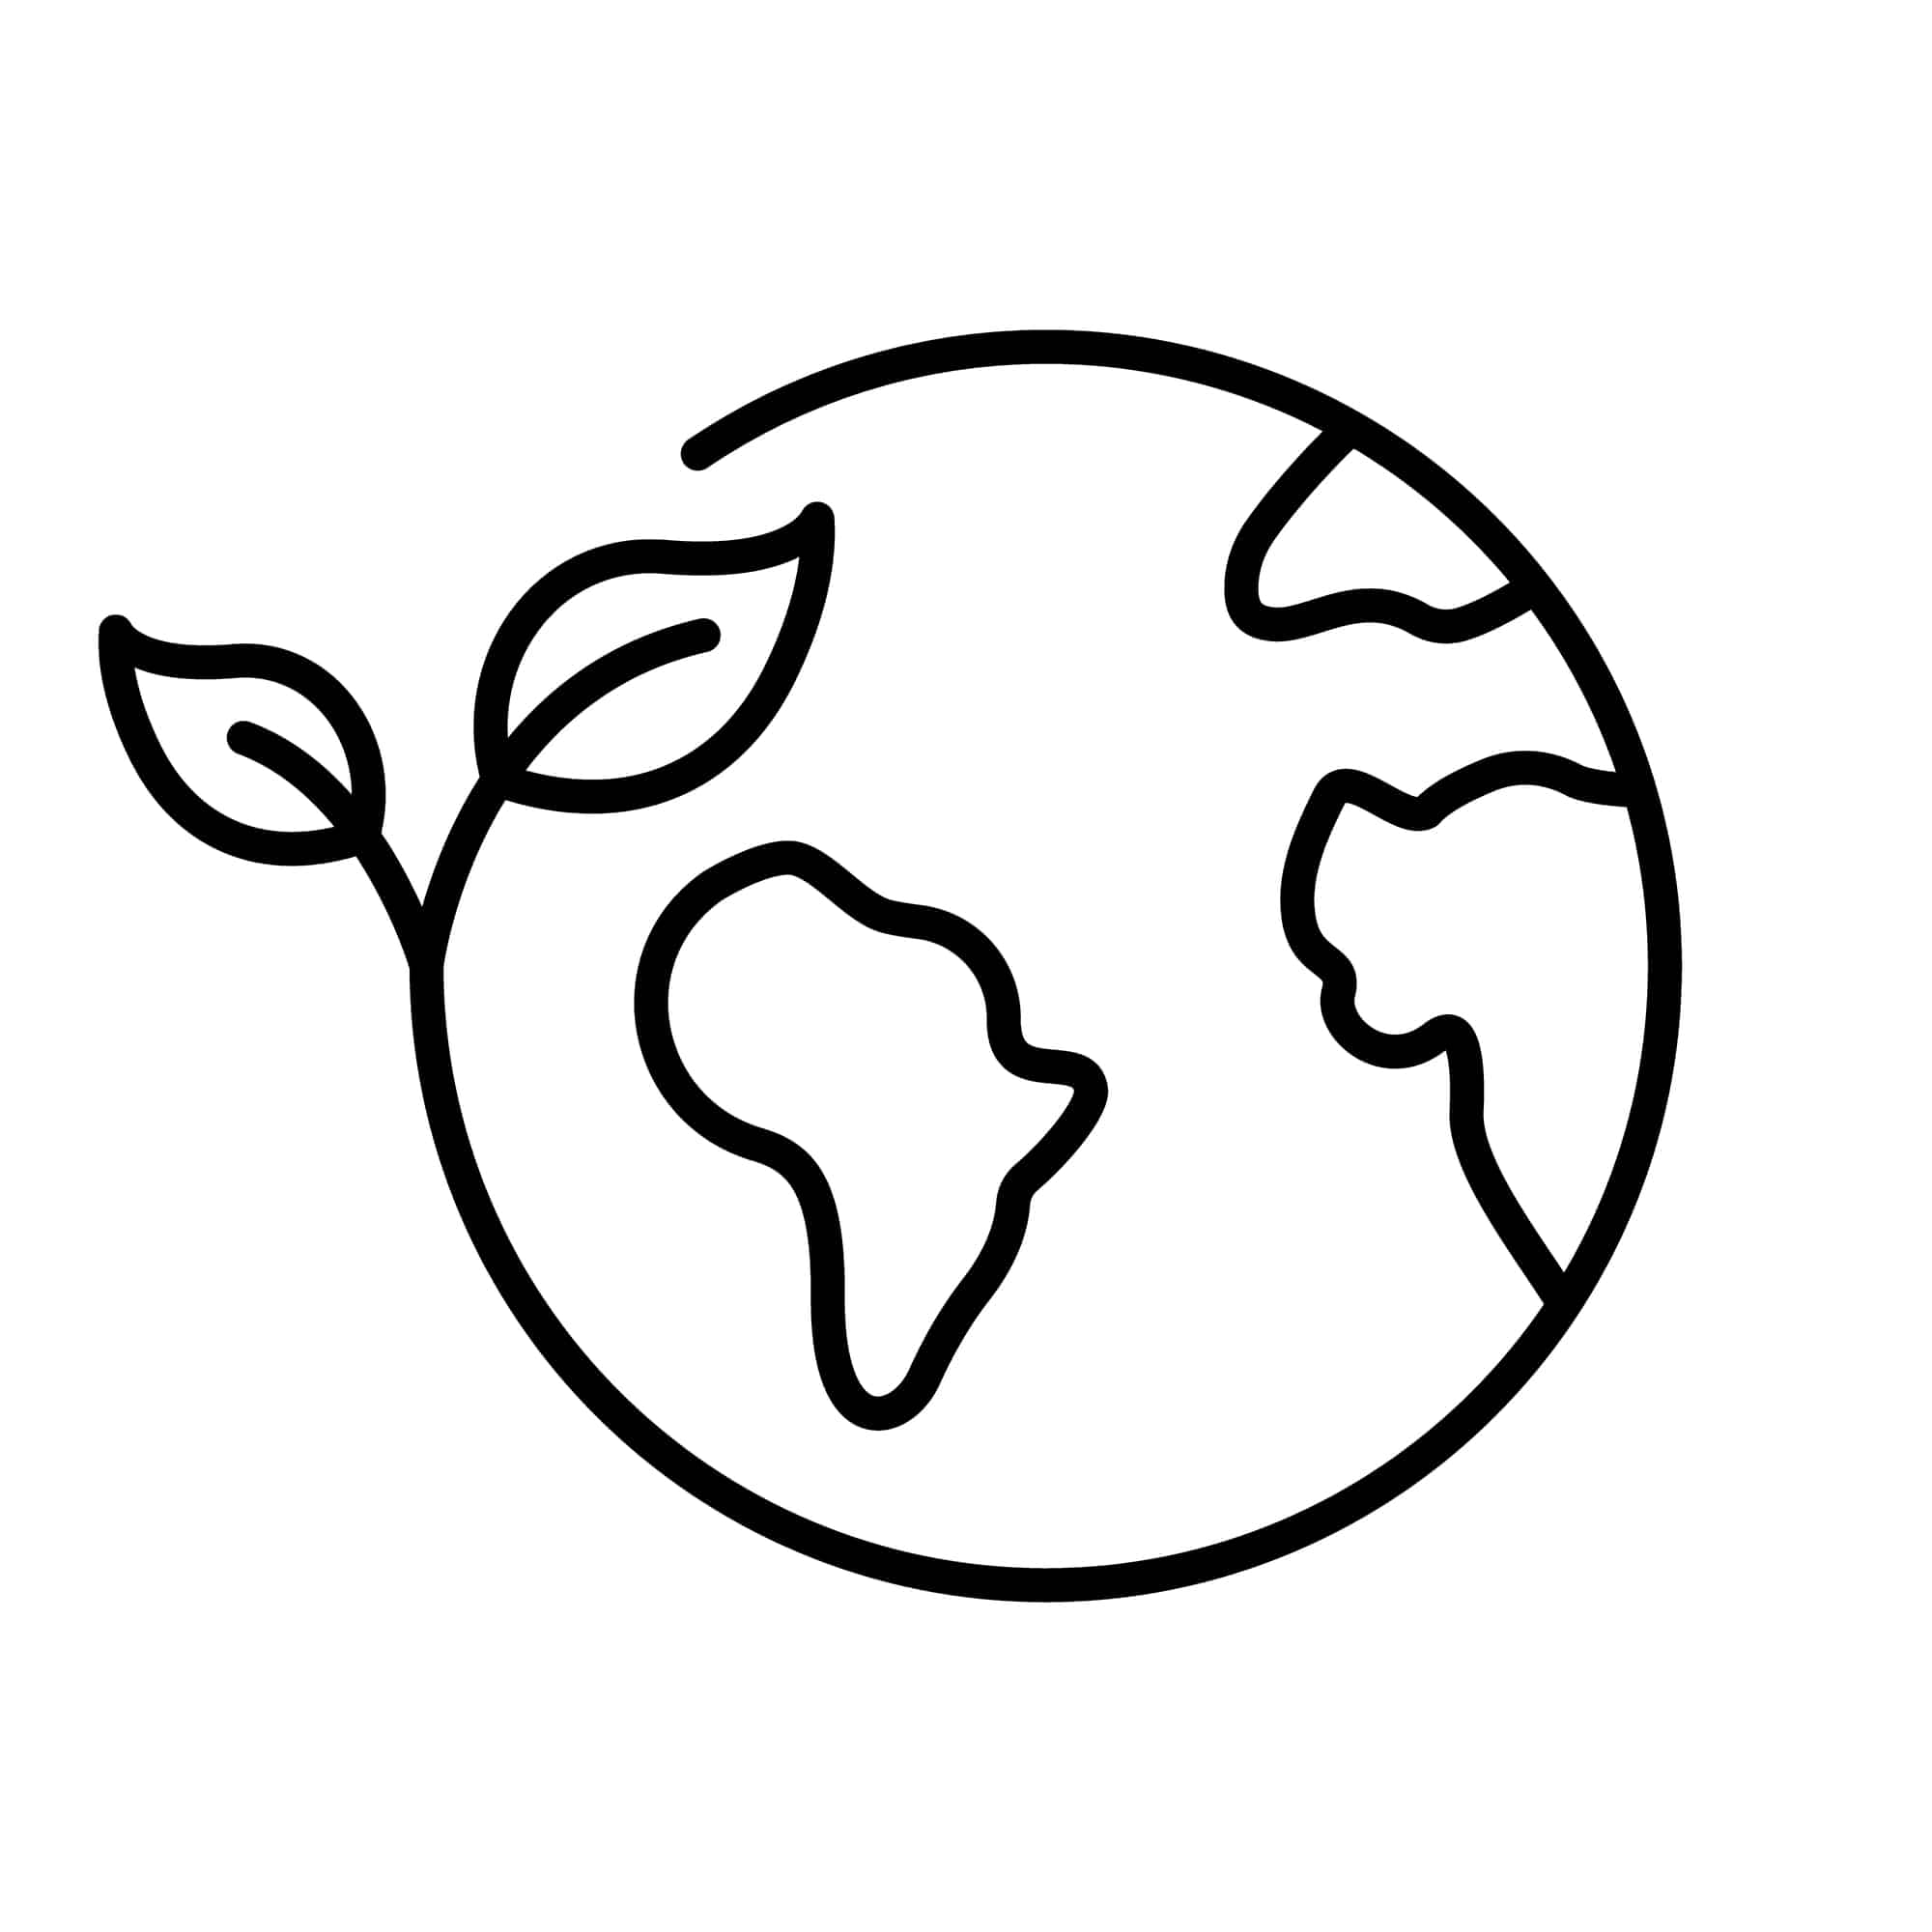 nachhaltigkeit-piktogramm